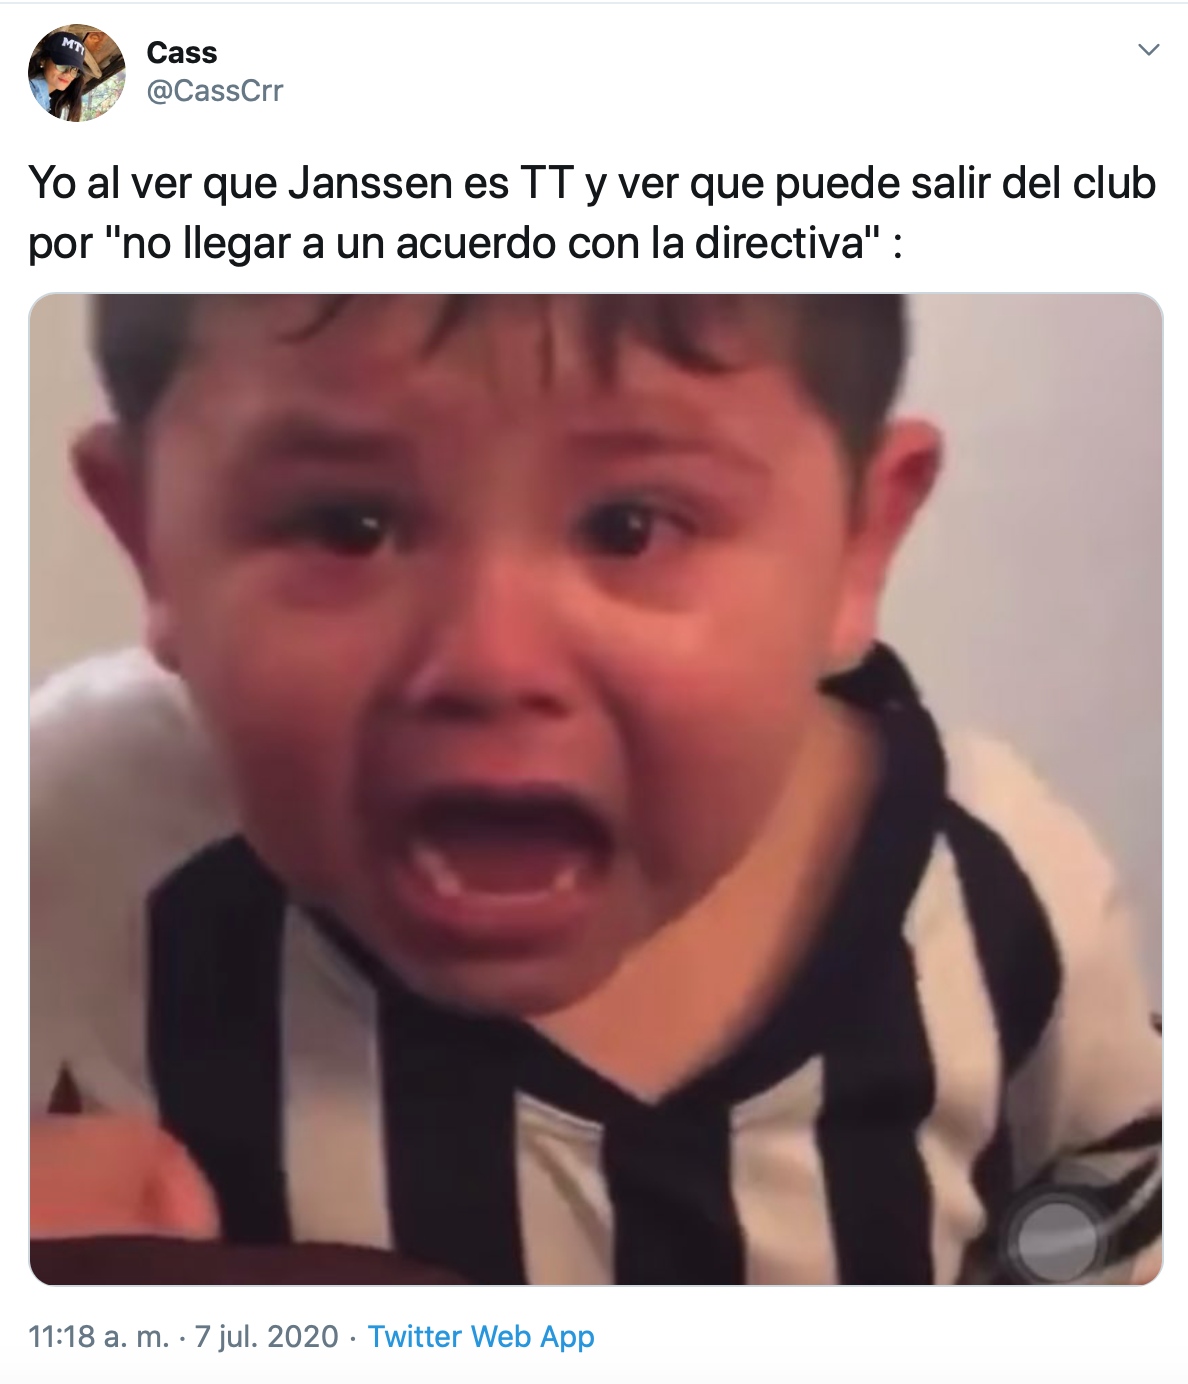 "Tú no Toro": Así reaccionó la afición de Rayados a la posible salida de Janssen